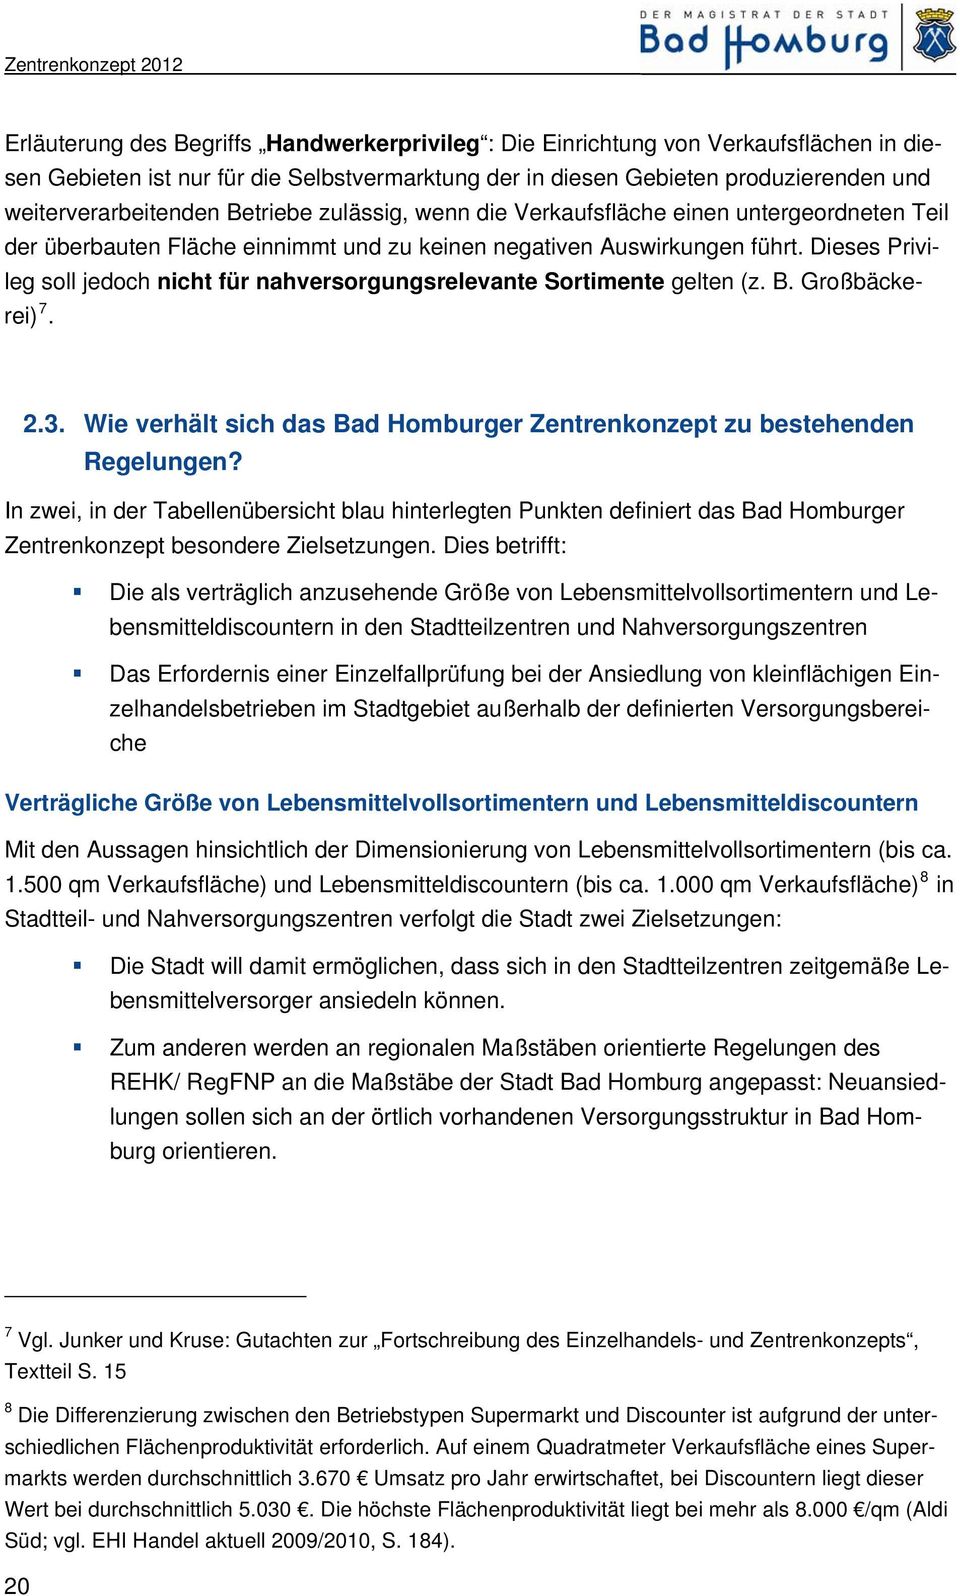 Dieses Privileg soll jedoch nicht für nahversorgungsrelevante Sortimente gelten (z. B. Großbäckerei) 7. 2.3. Wie verhält sich das Bad Homburger Zentrenkonzept zu bestehenden Regelungen?